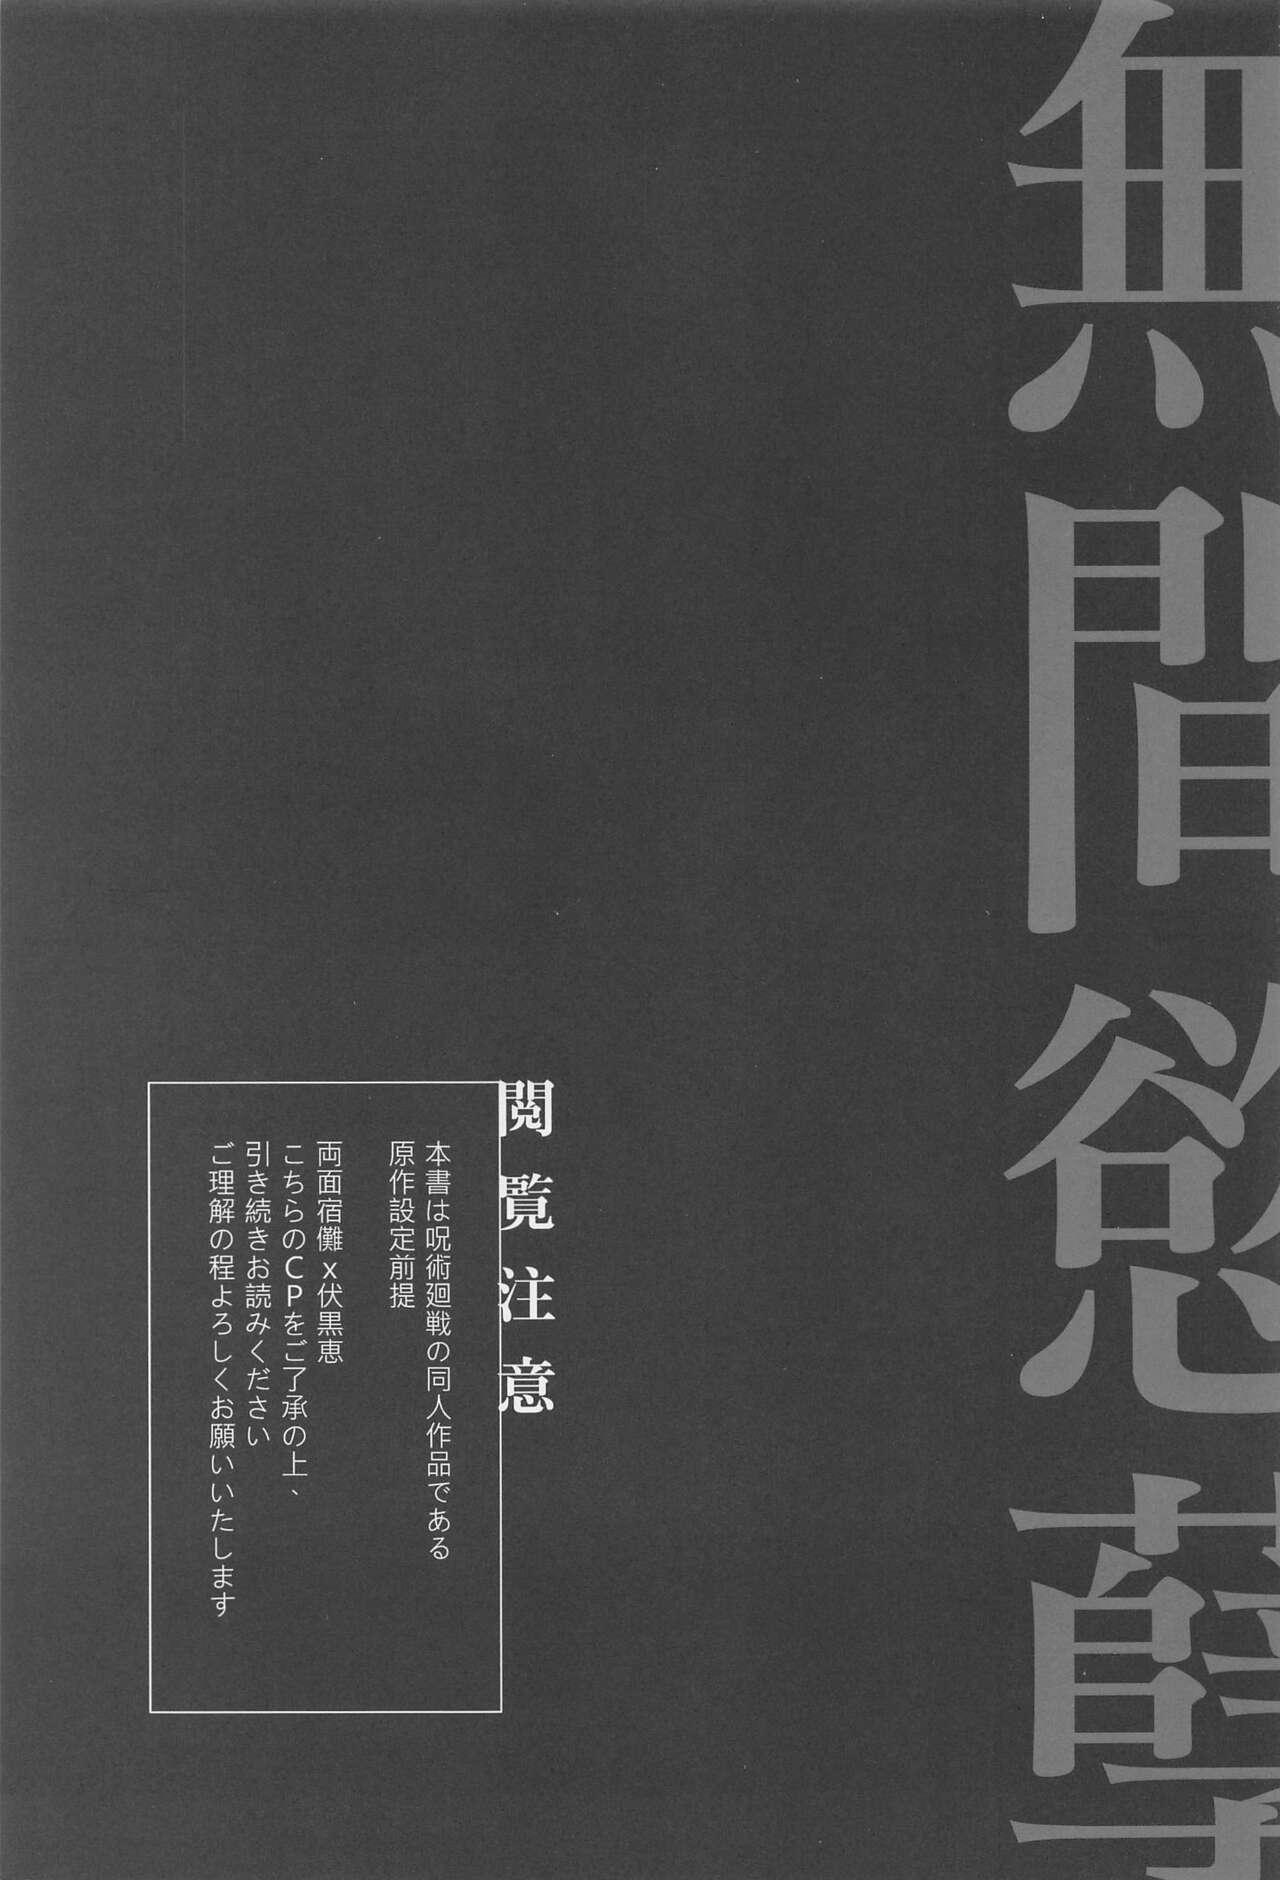 Onlyfans Mugen Yoku Hikobae - Jujutsu kaisen Bokep - Page 2